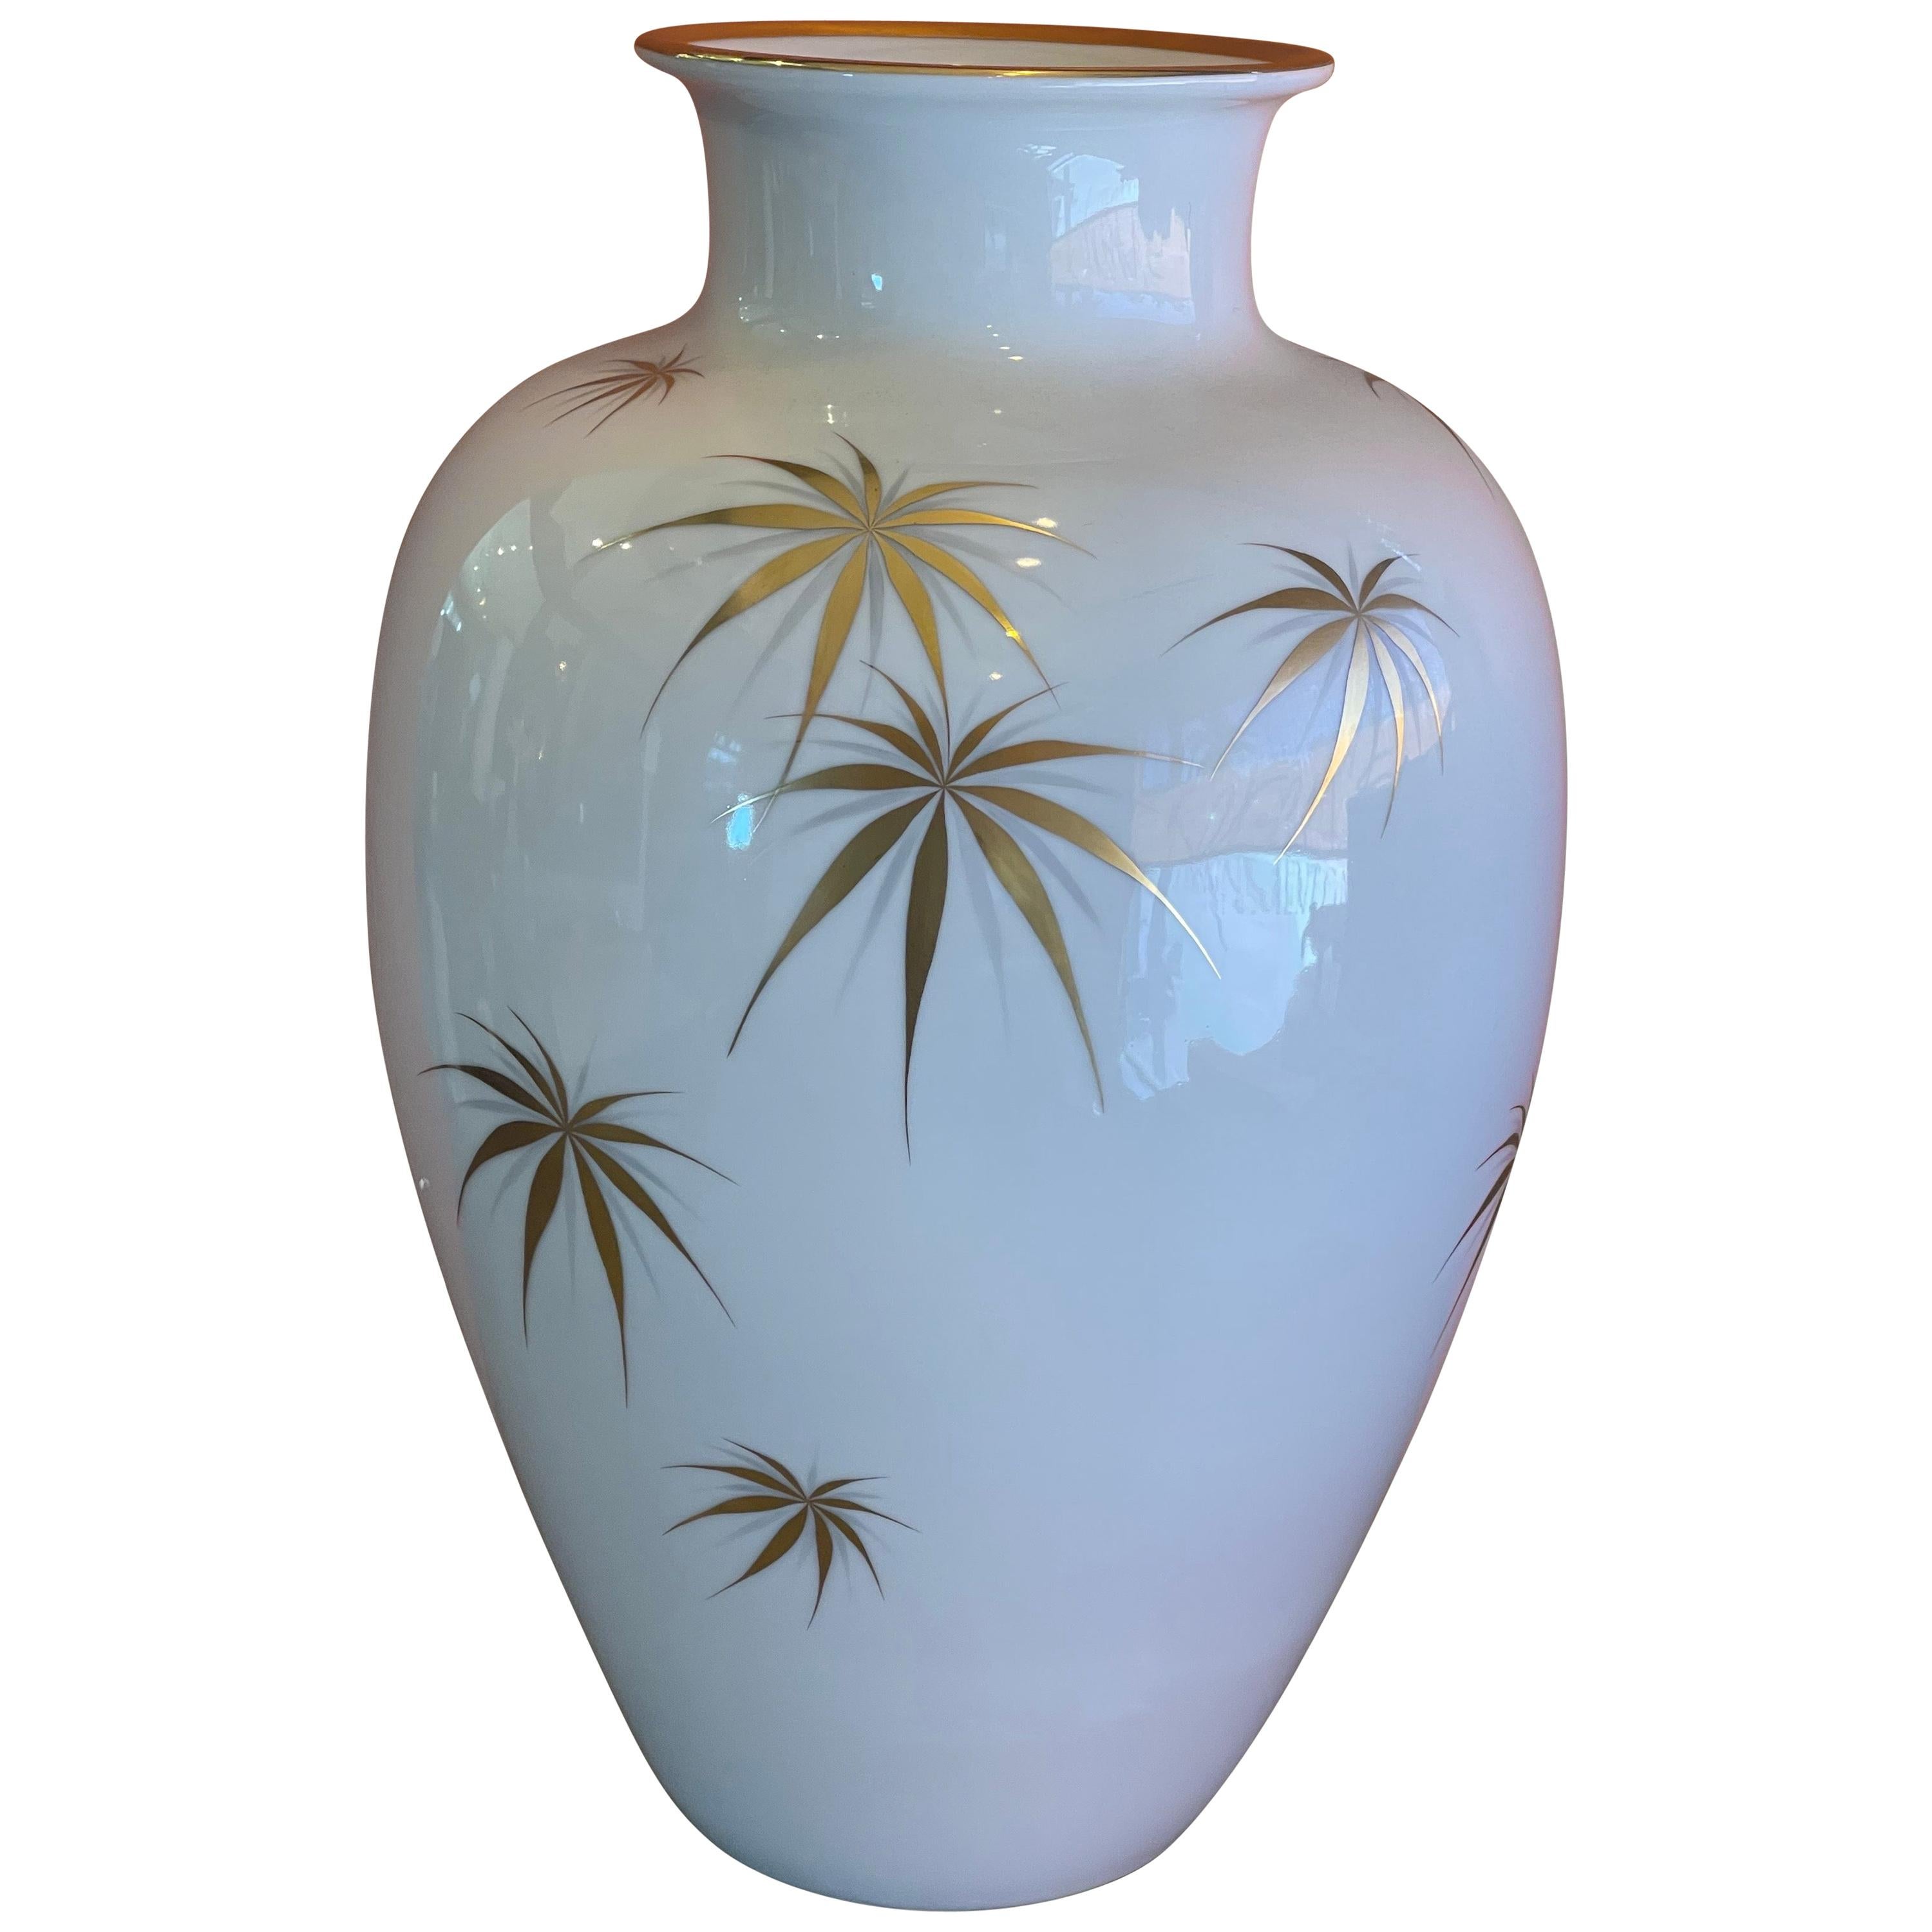 Large Porcelain Vase / Vessel by Heinrich of Bavaria / Selb